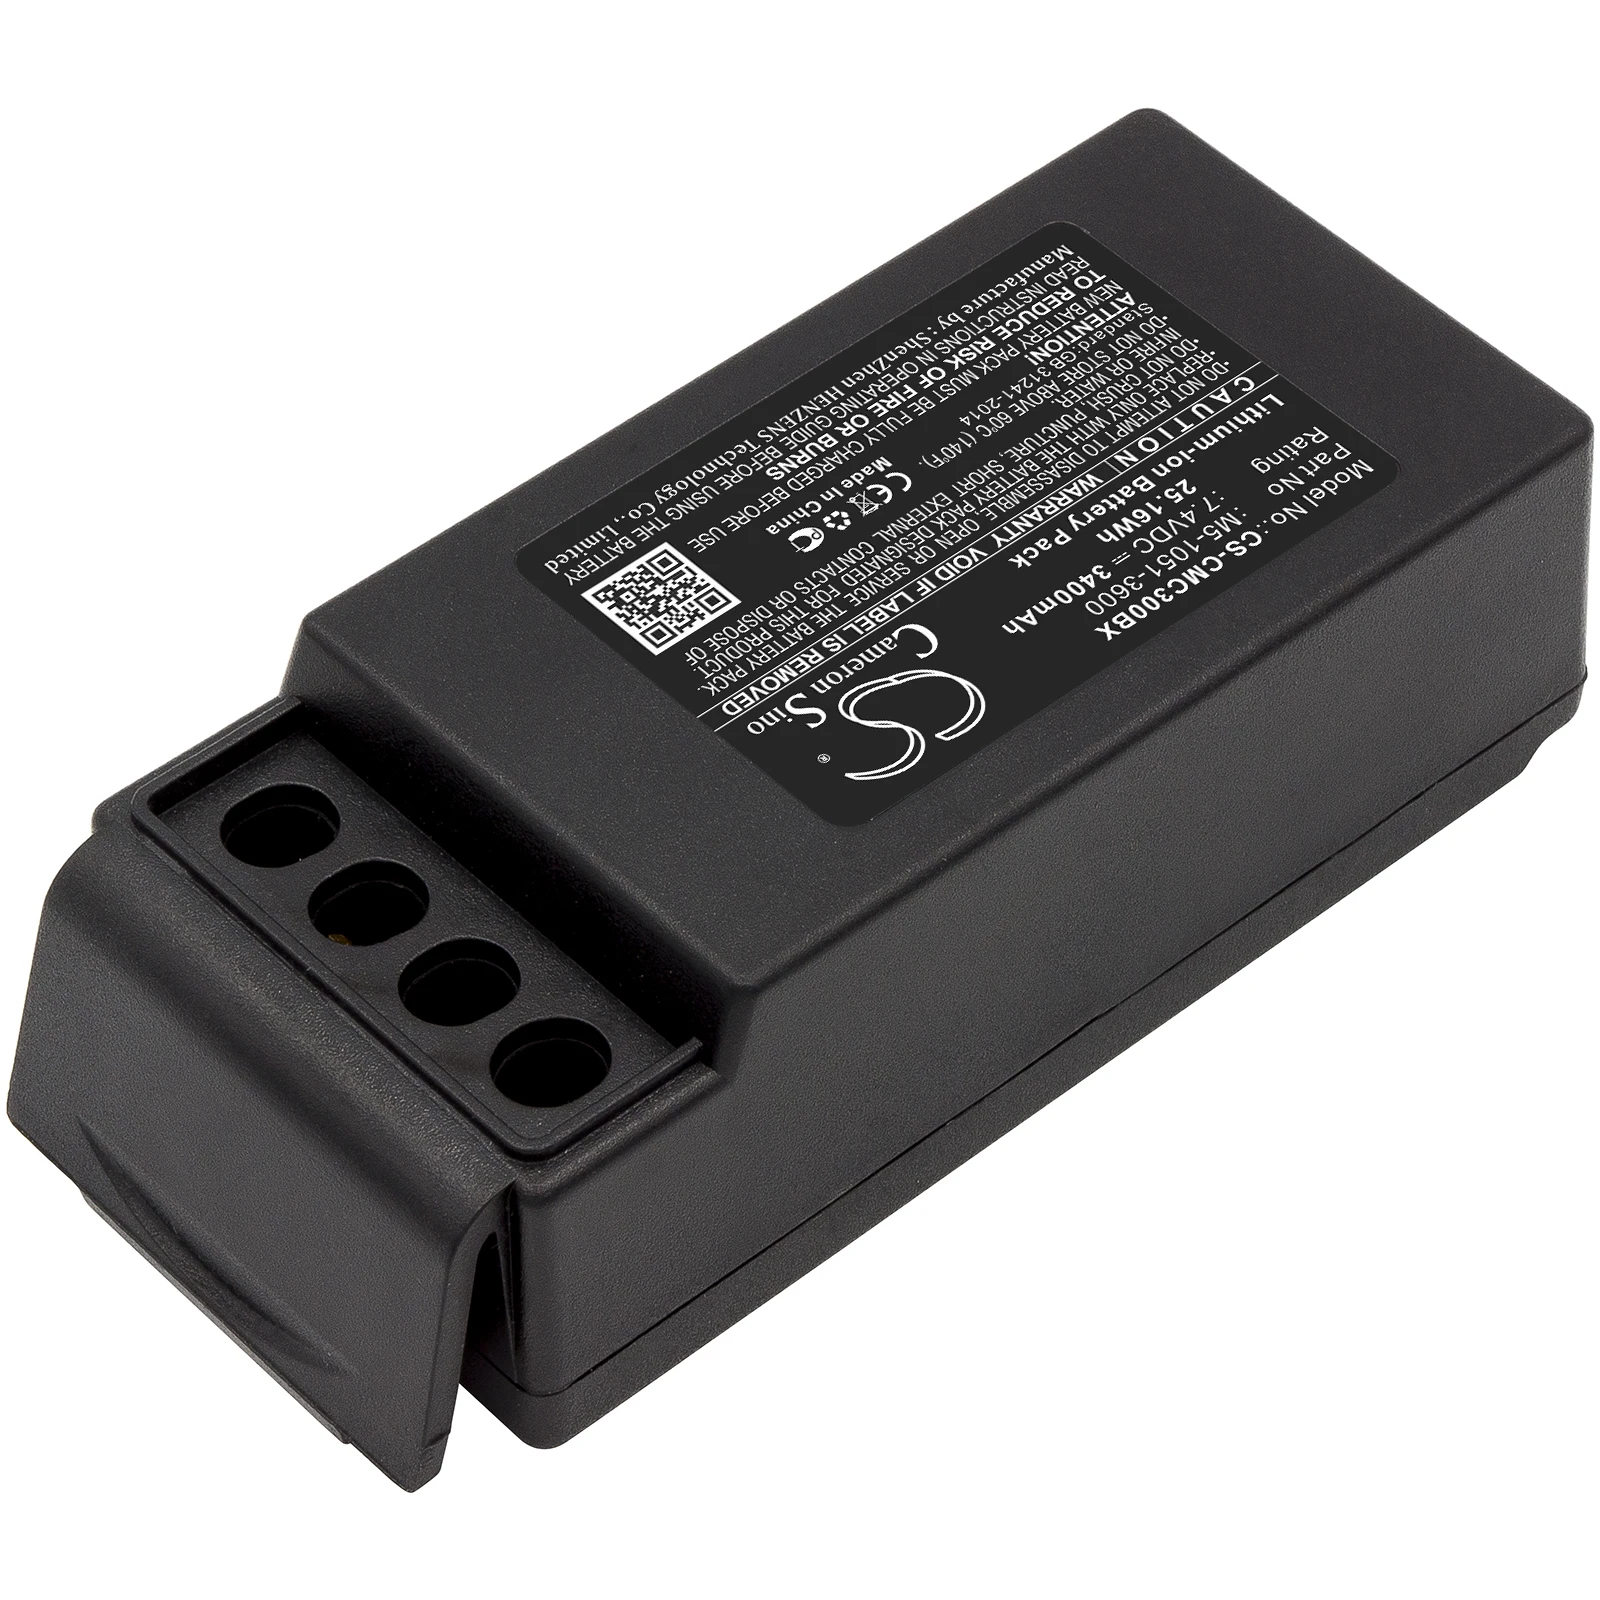 Батарея дистанционного управления Краном Для Cavotec M5-1051-3600 M9-1051-3600 EX MC-3 MC-3000 Вольт 7,4 Емкостью 3400 мАч/25,16 Втч + Инструменты Изображение 2 